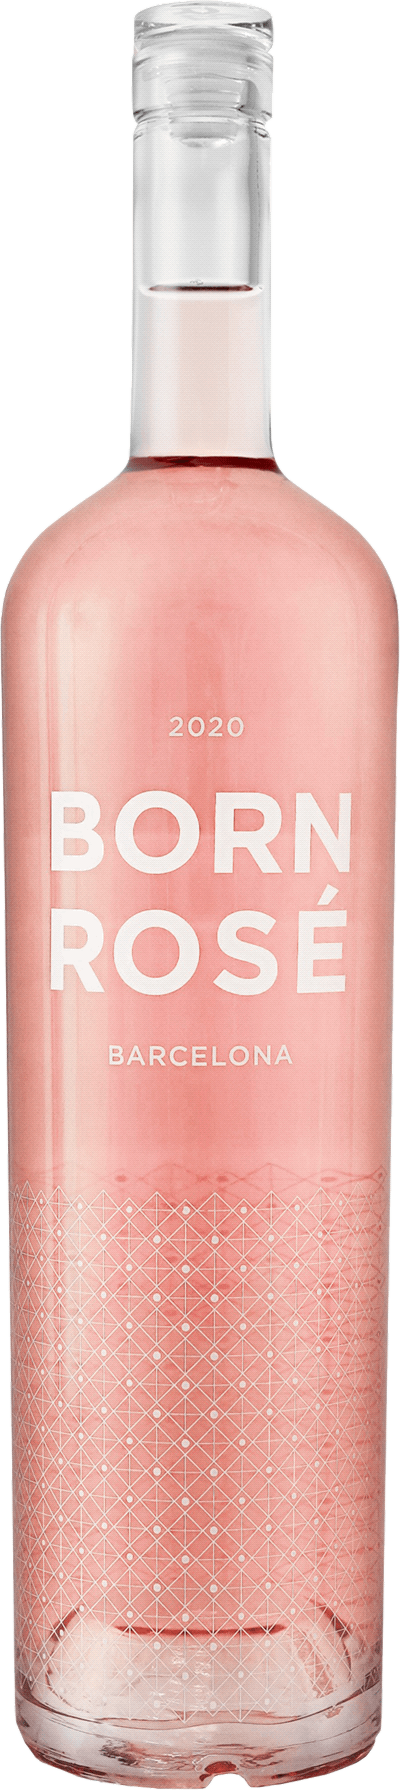 Born Rosé Barcelona Dubbelmagnum